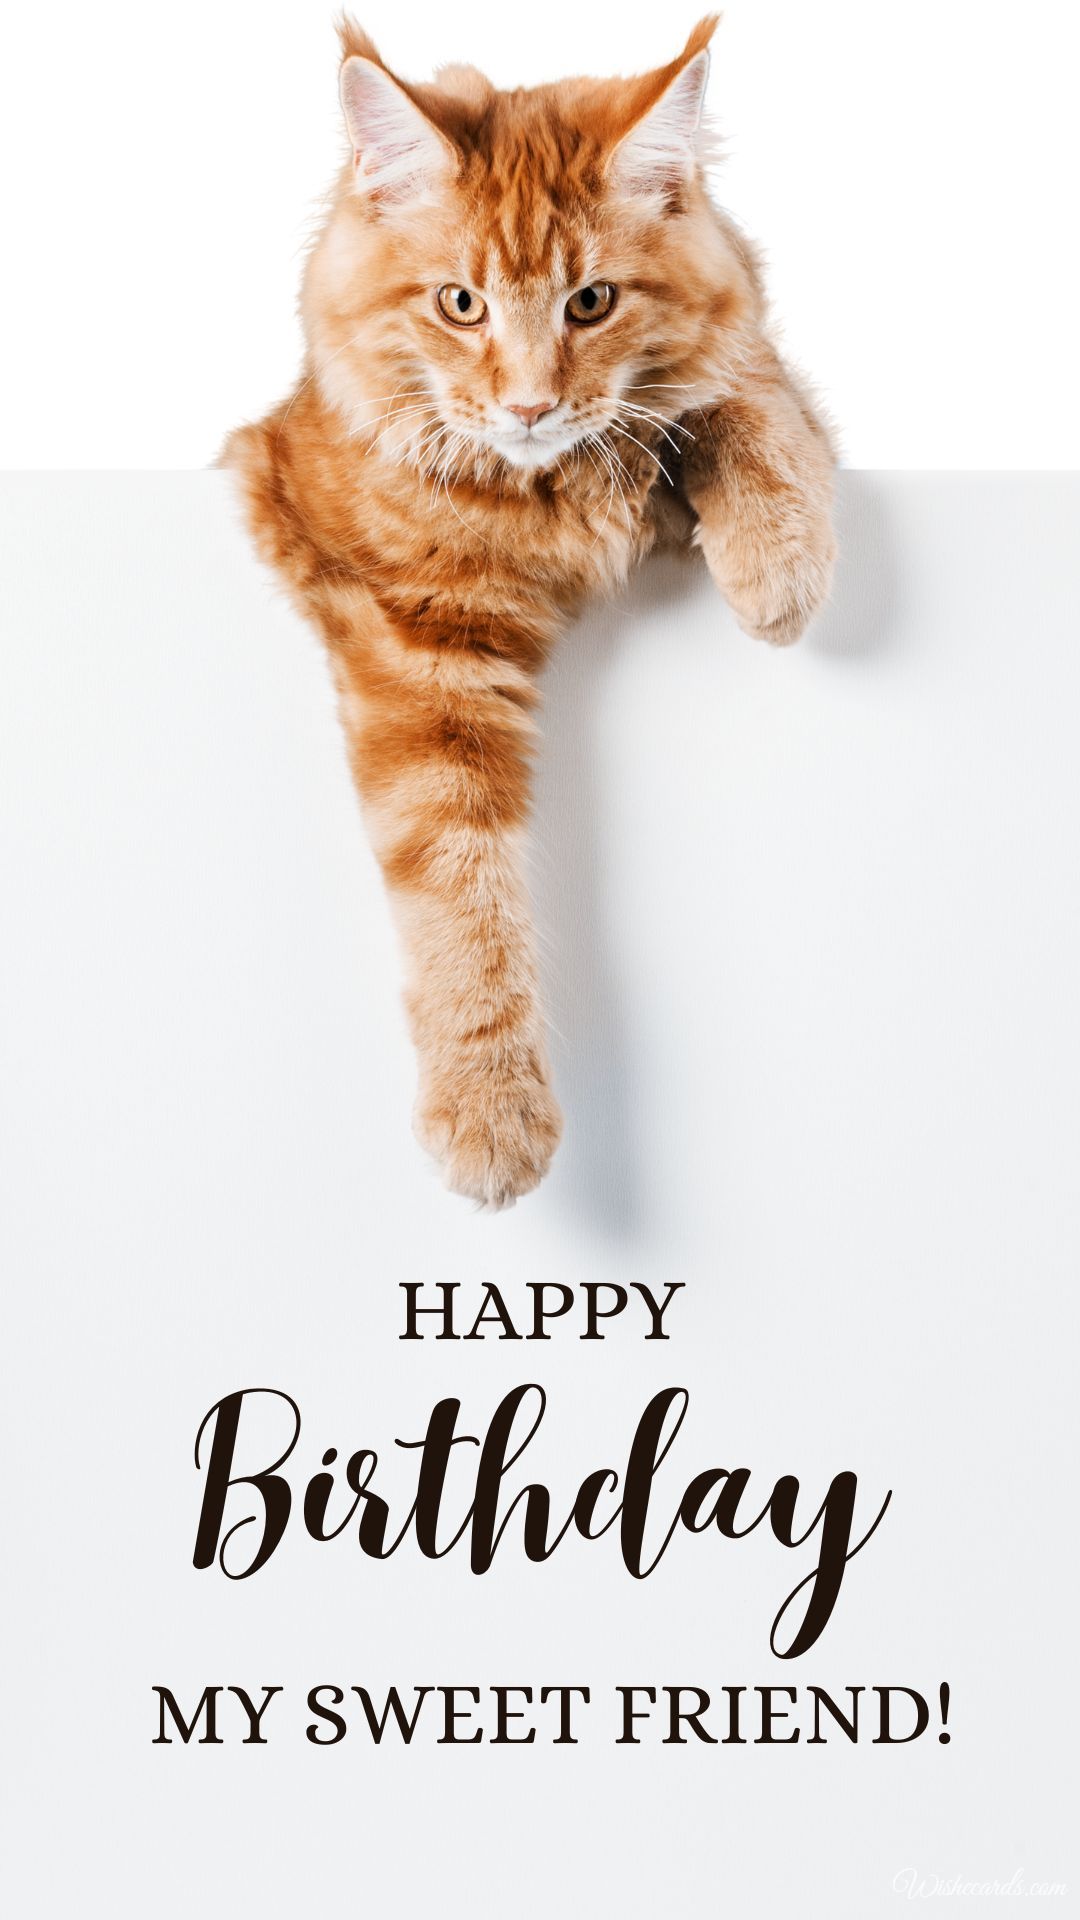 Happy Birthday Image Funny Cat